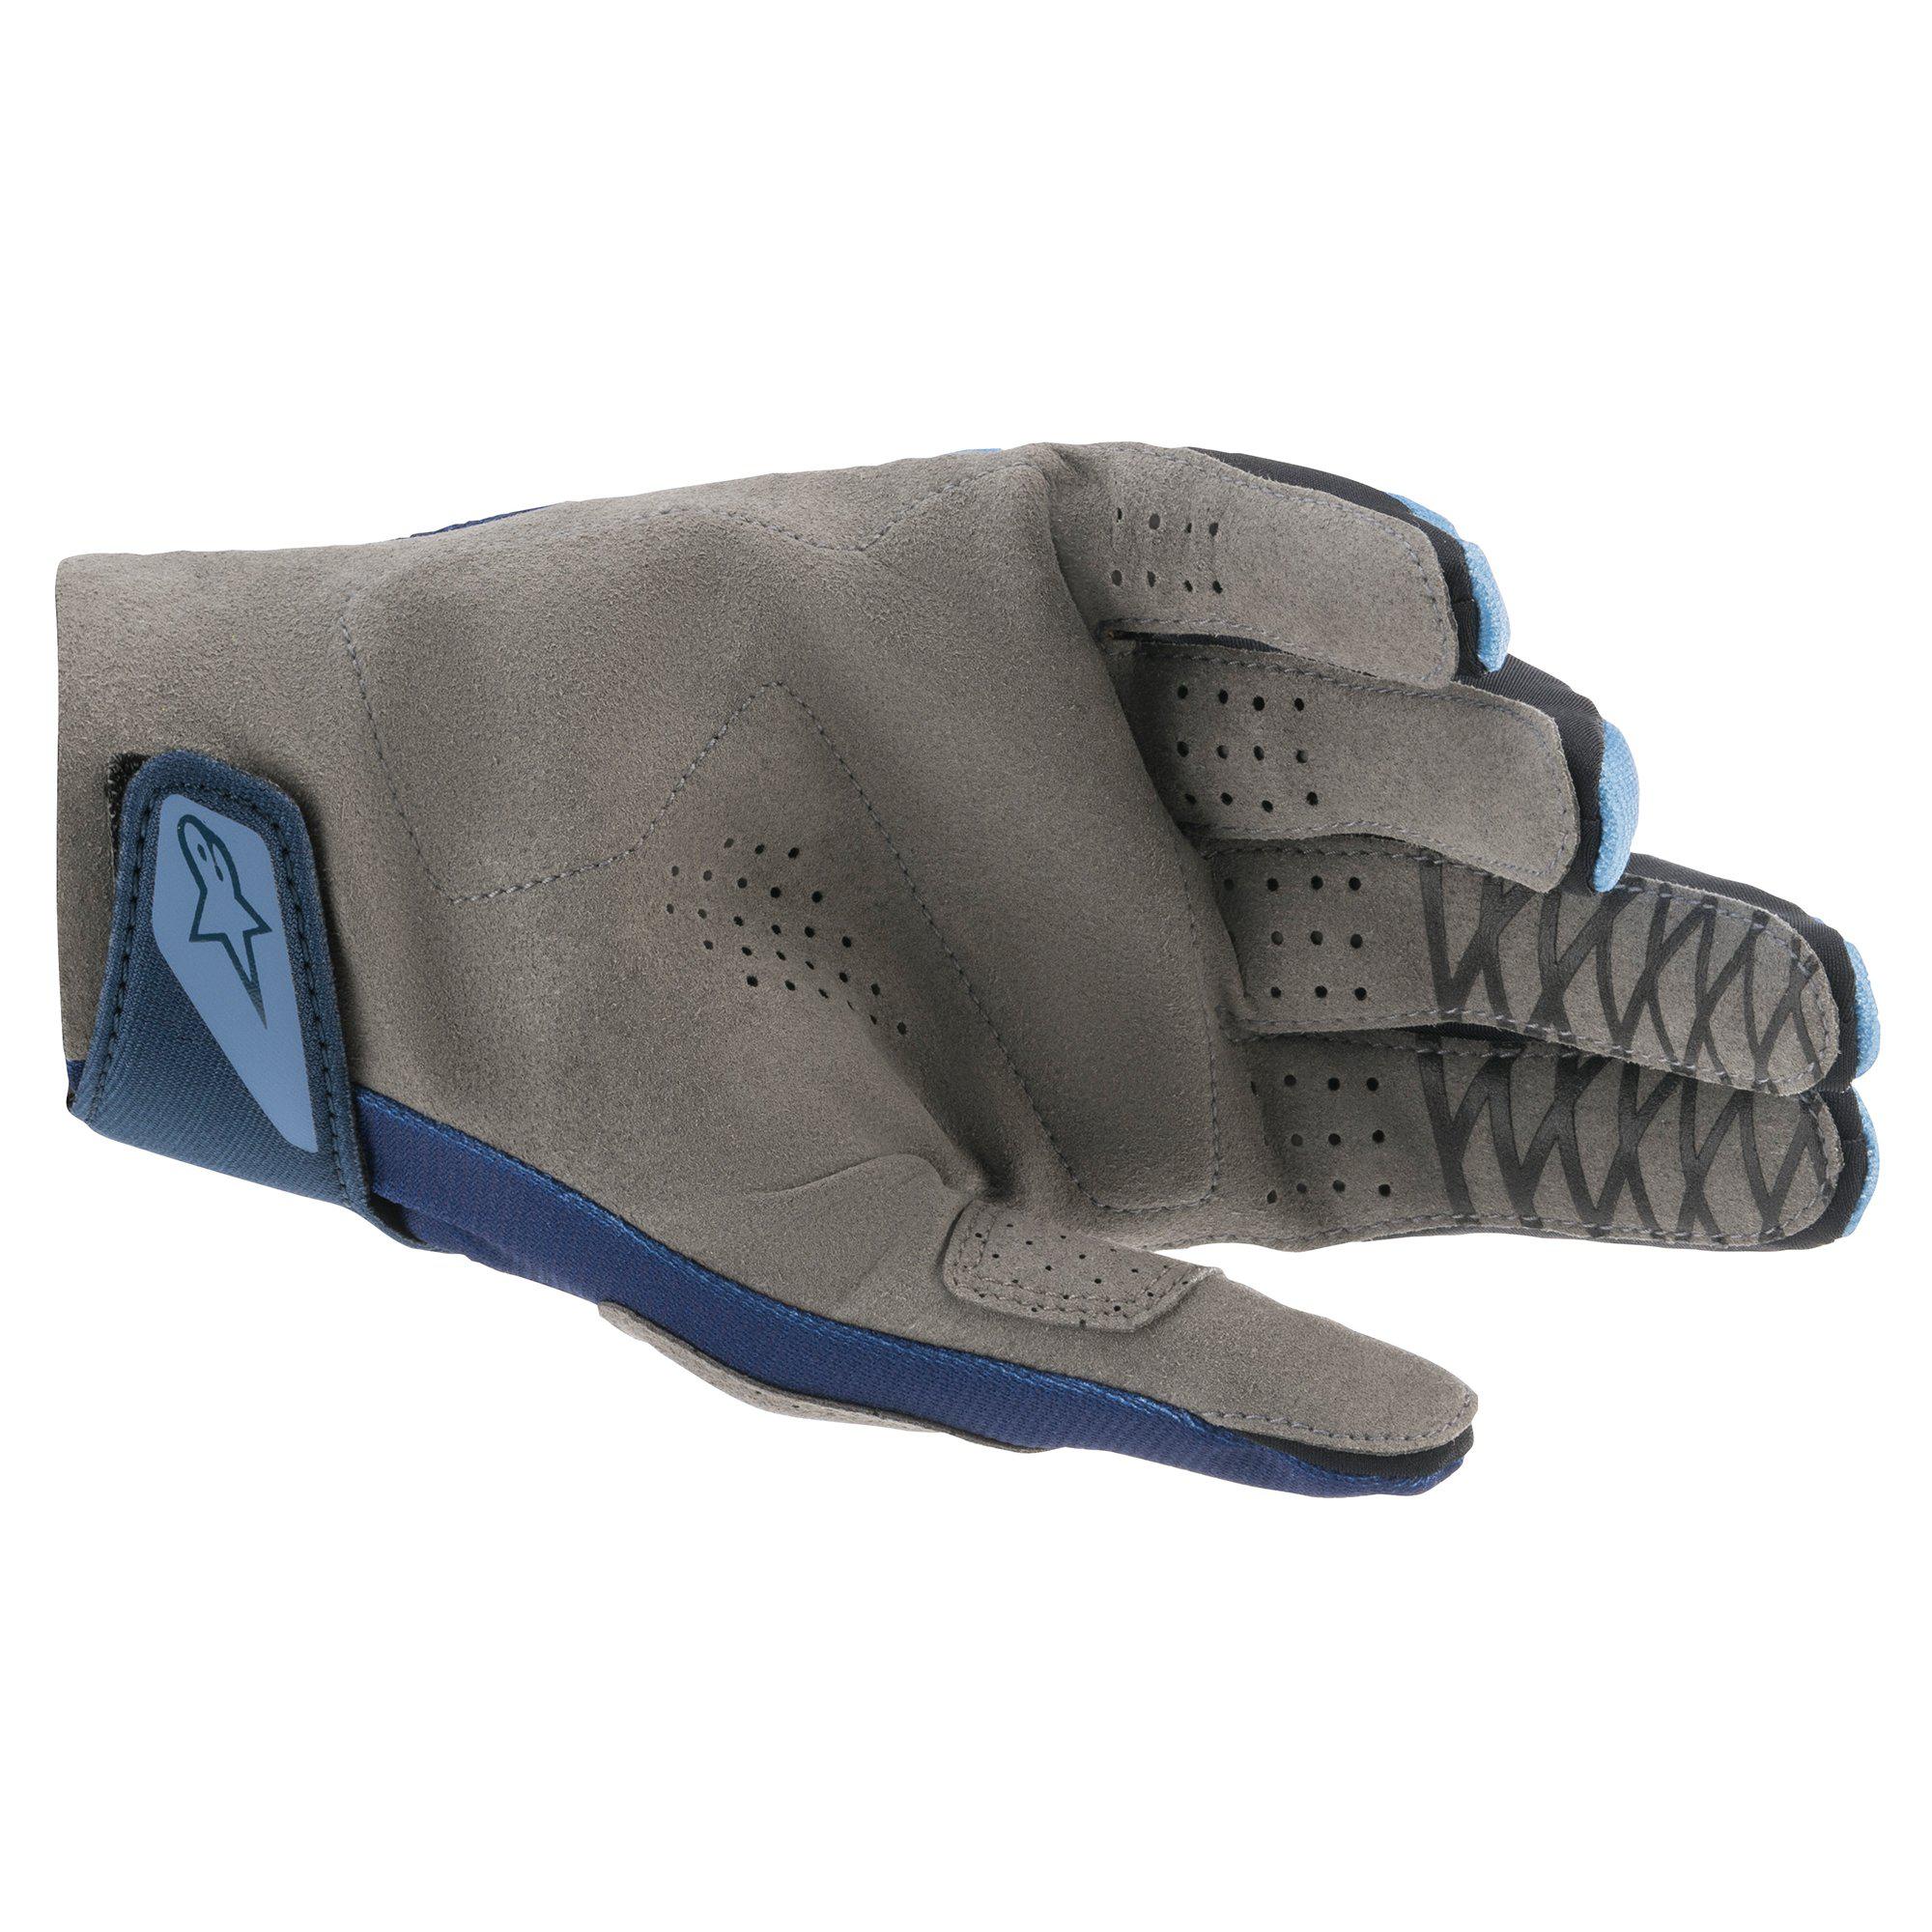 2021 Racefend Gloves